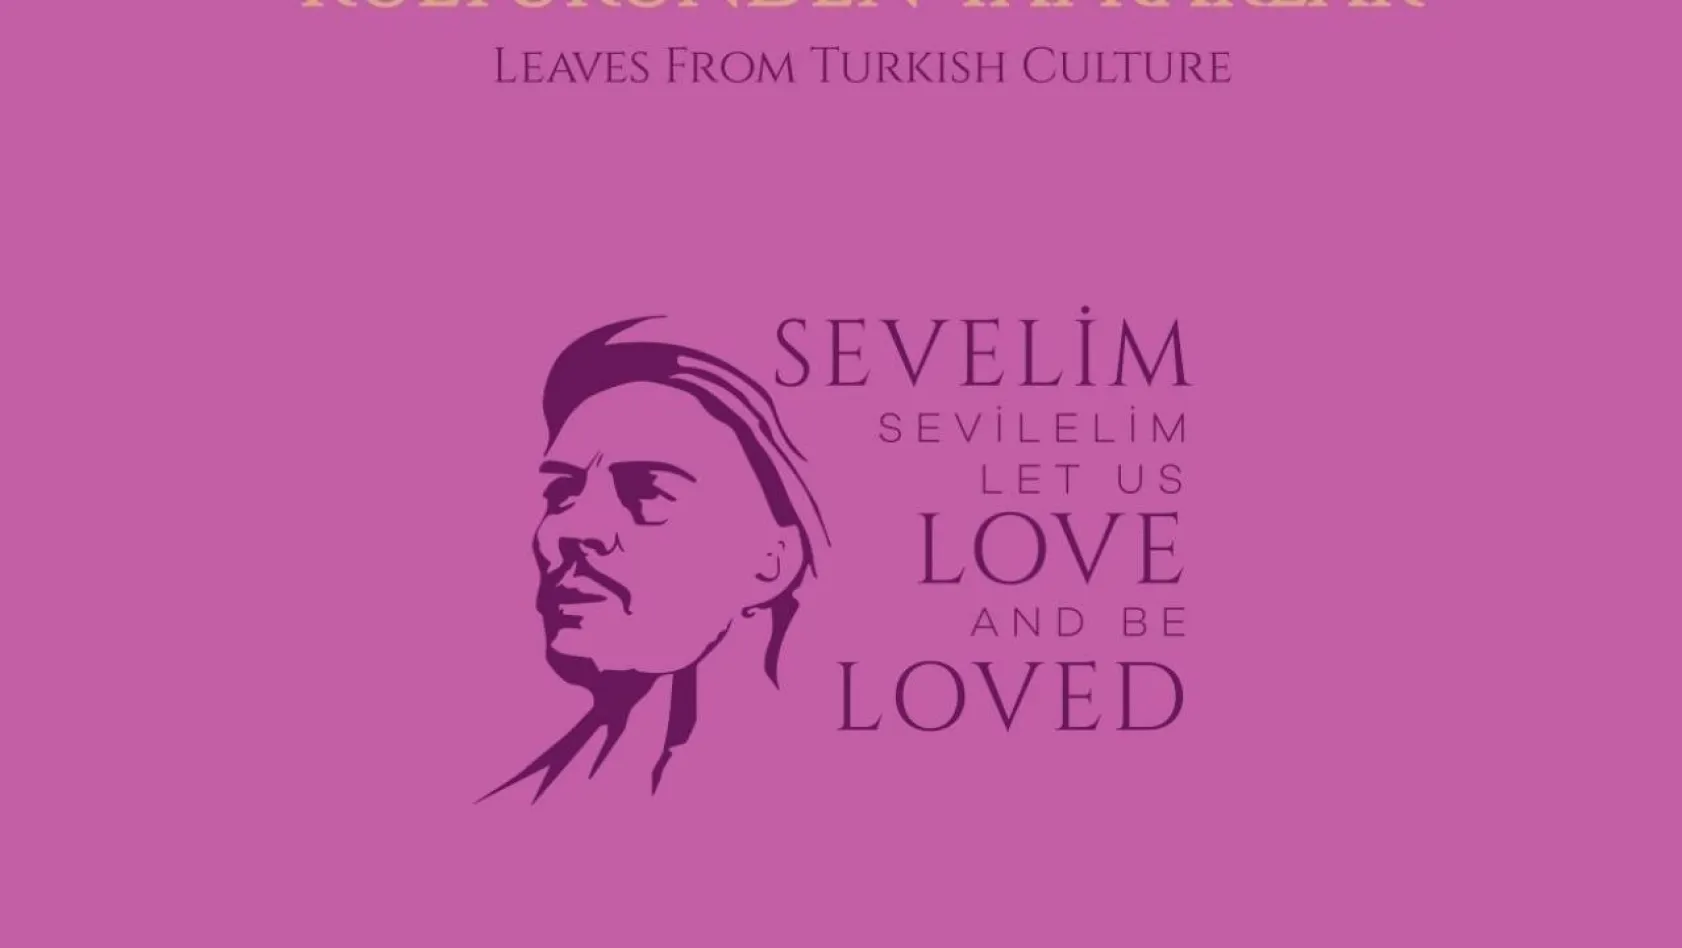 Türkiye'nin kültürel değerleri tek bir yerde toplandı